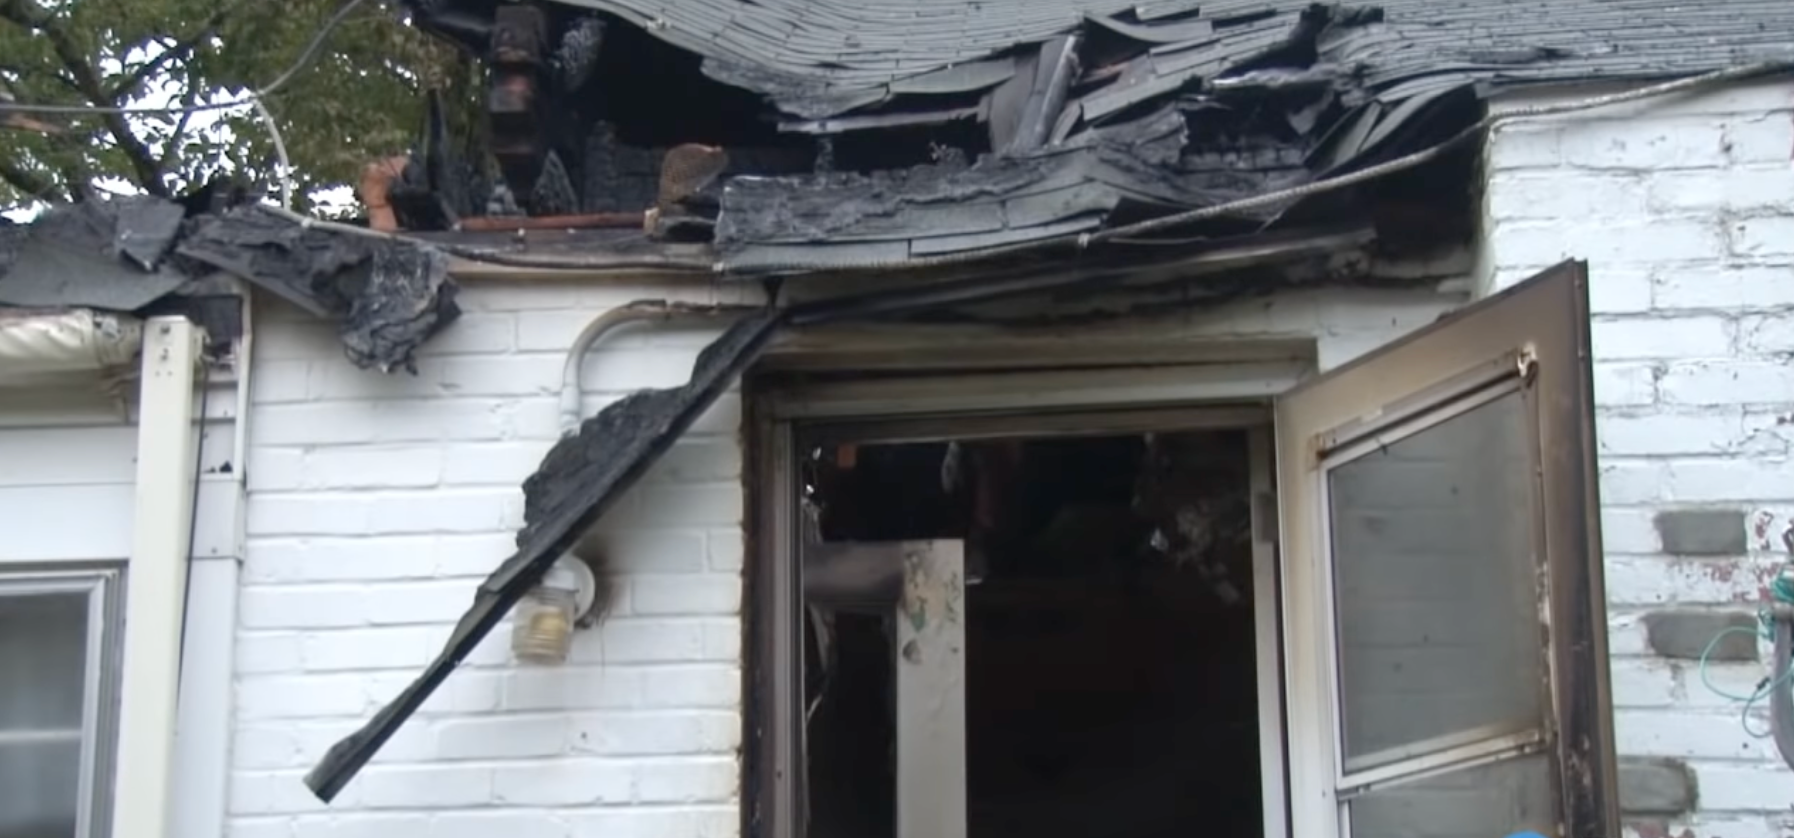 Bildschirmfoto aus einem Nachrichtenbeitrag über das beschädigte Haus von Arthur und Rosemary Schneider nach einem Brand im Jahr 2015 | Quelle: youtube.com/@USATODAY